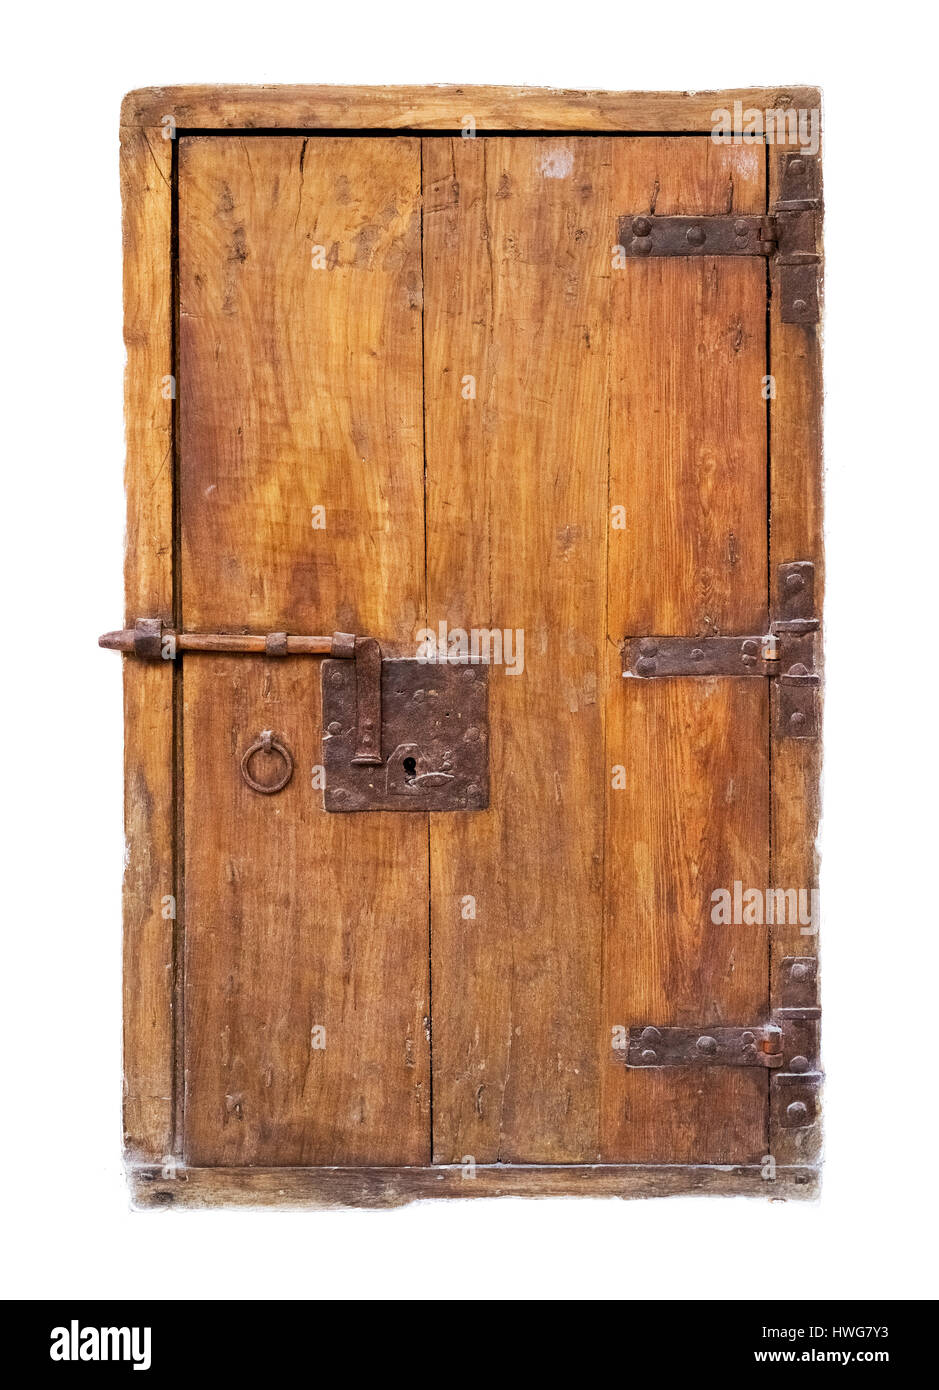 old little wooden door with locker Stock Photo